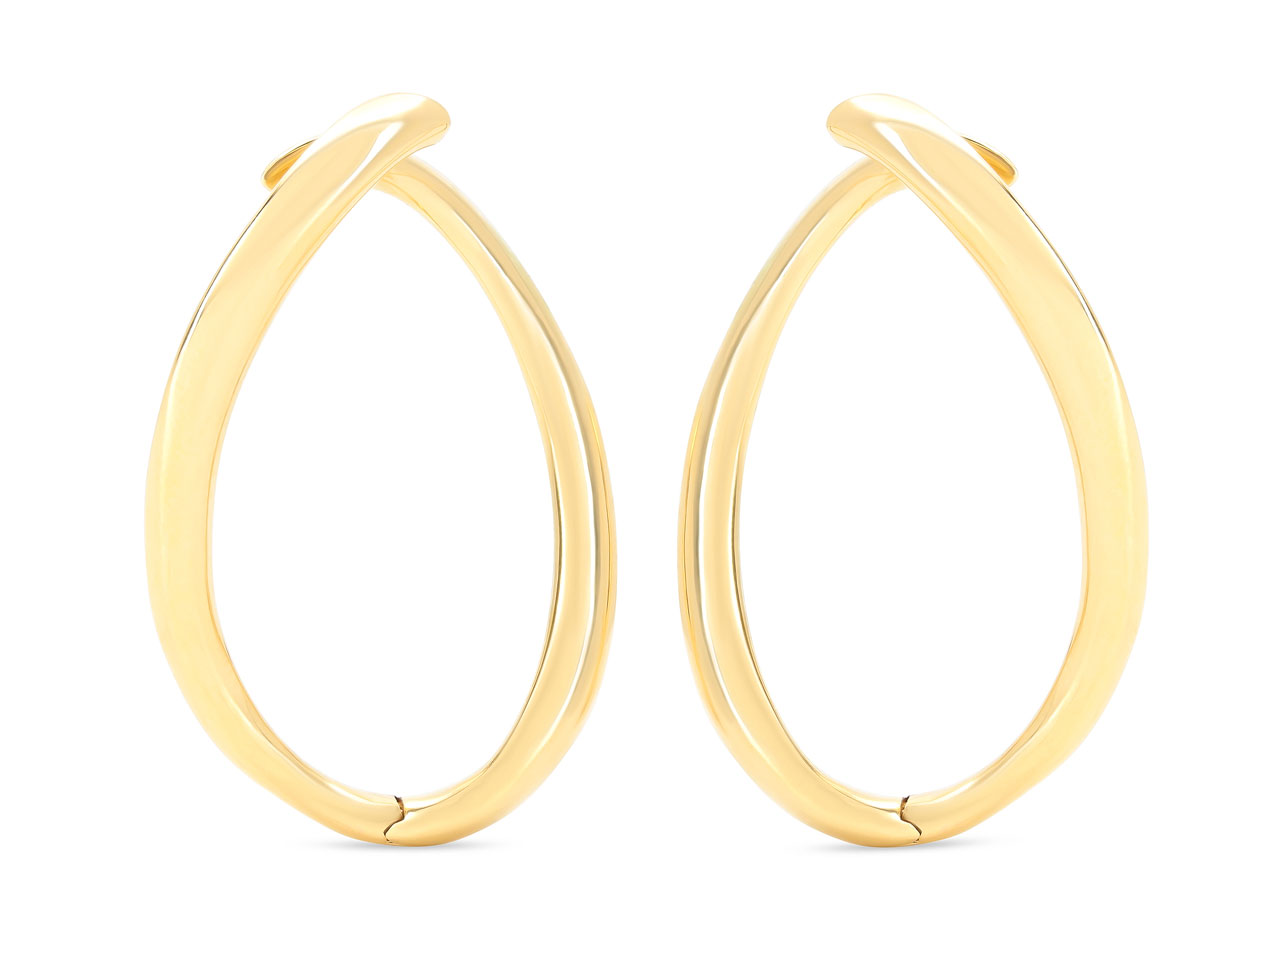 Loop Earrings in 18K Gold, by Beladora